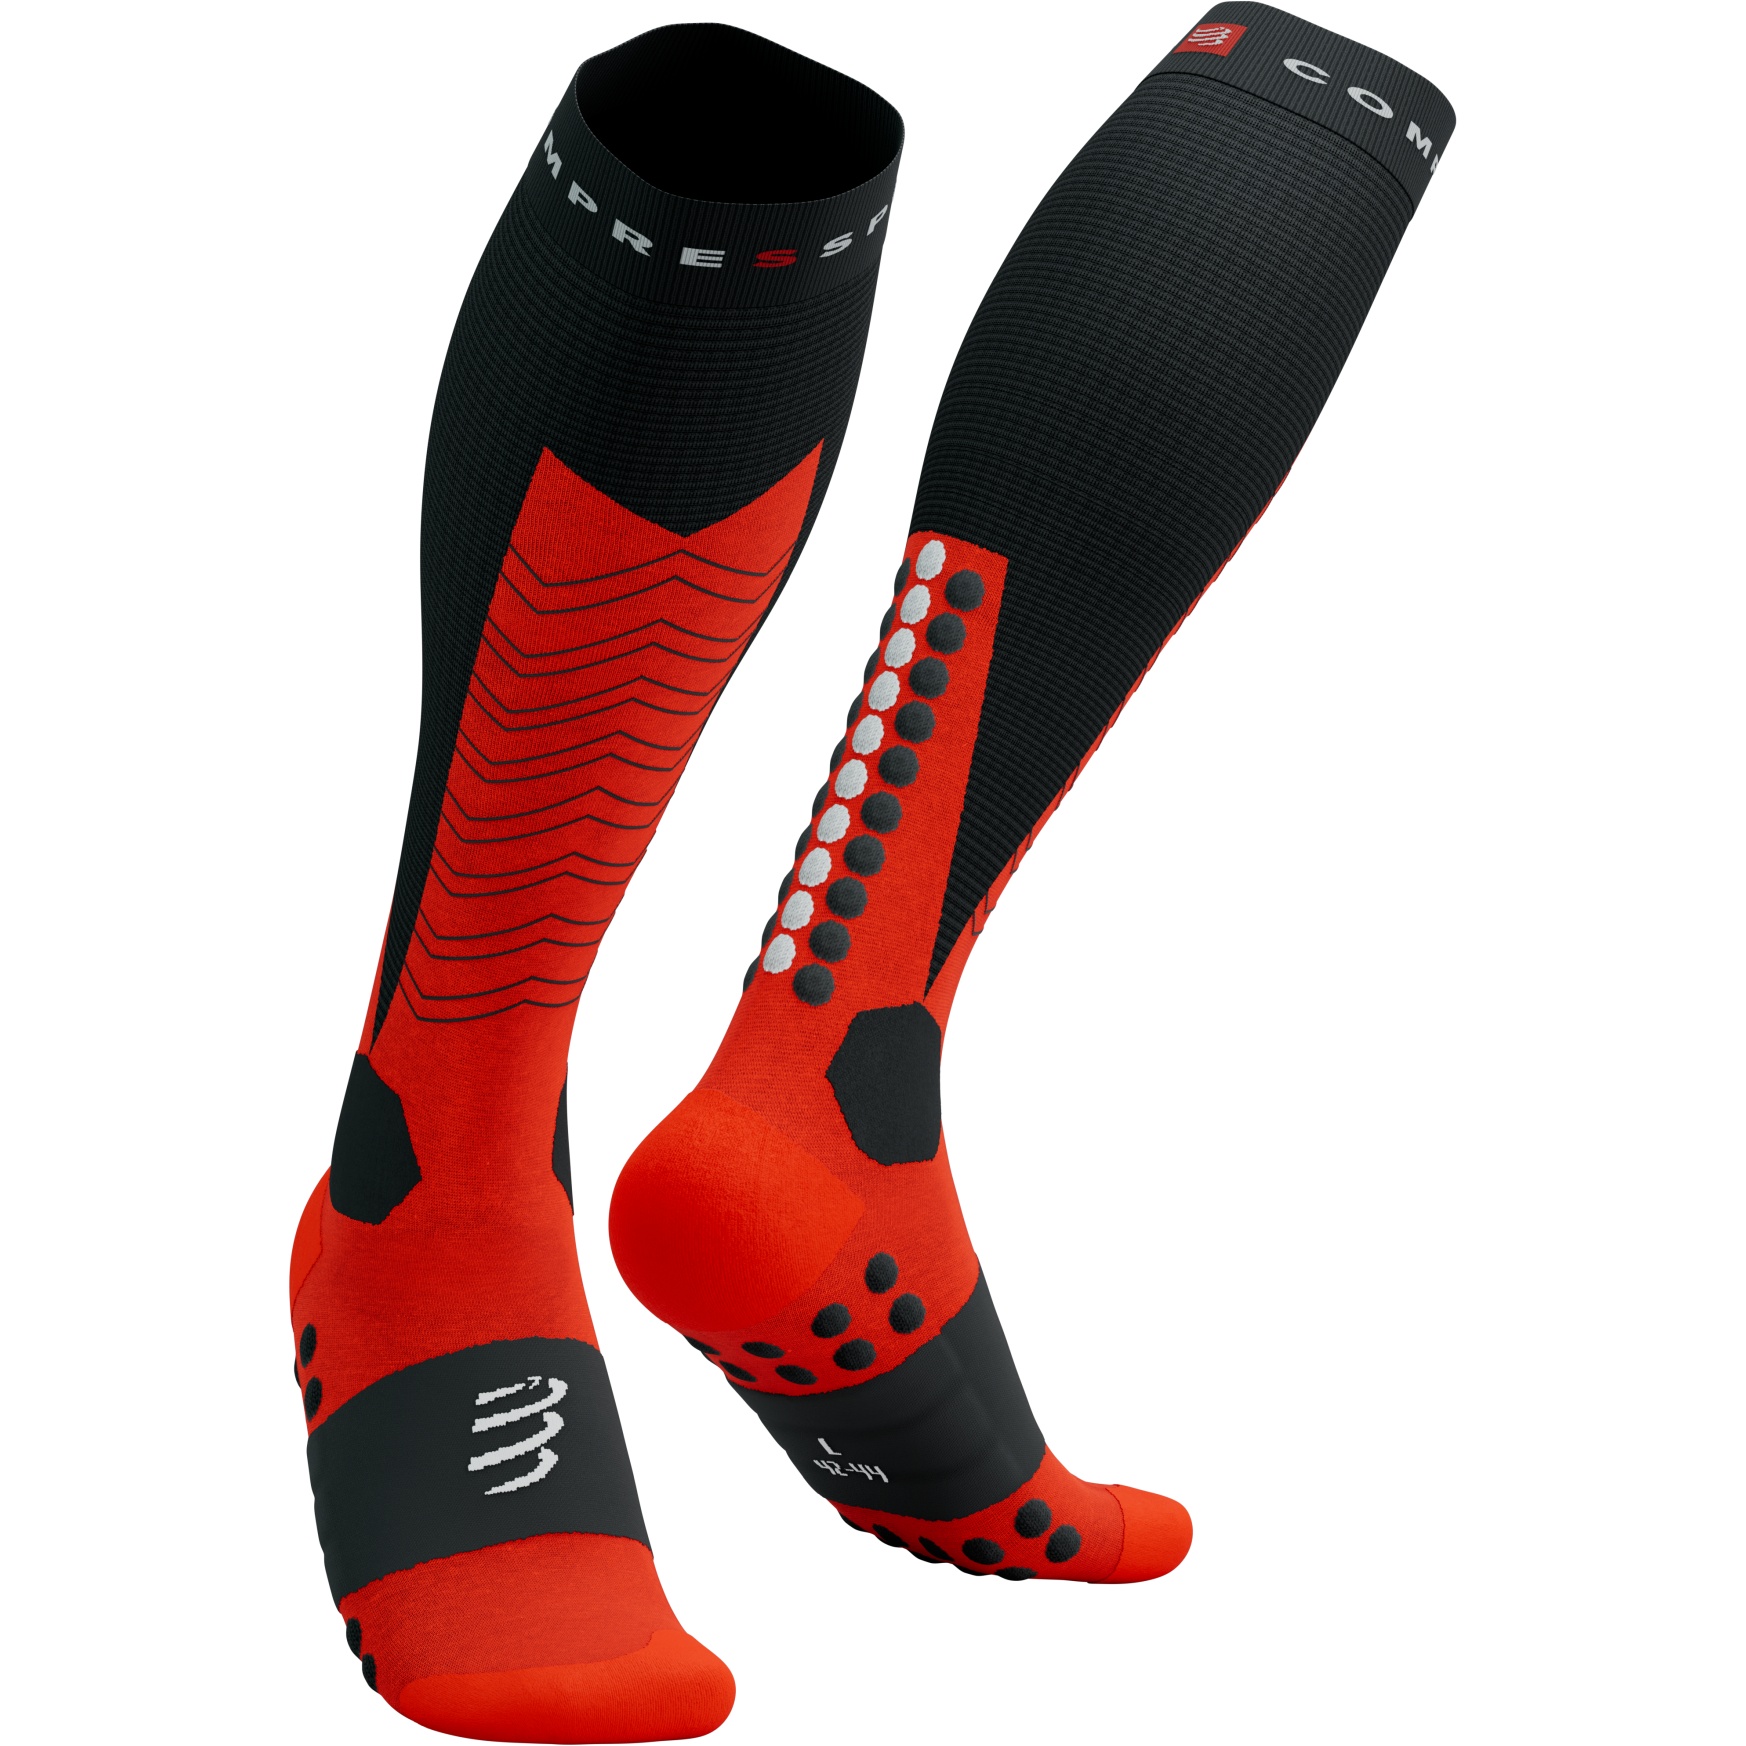 Produktbild von Compressport Ski Mountaineering Full Kompressionssocken - schwarz/rot